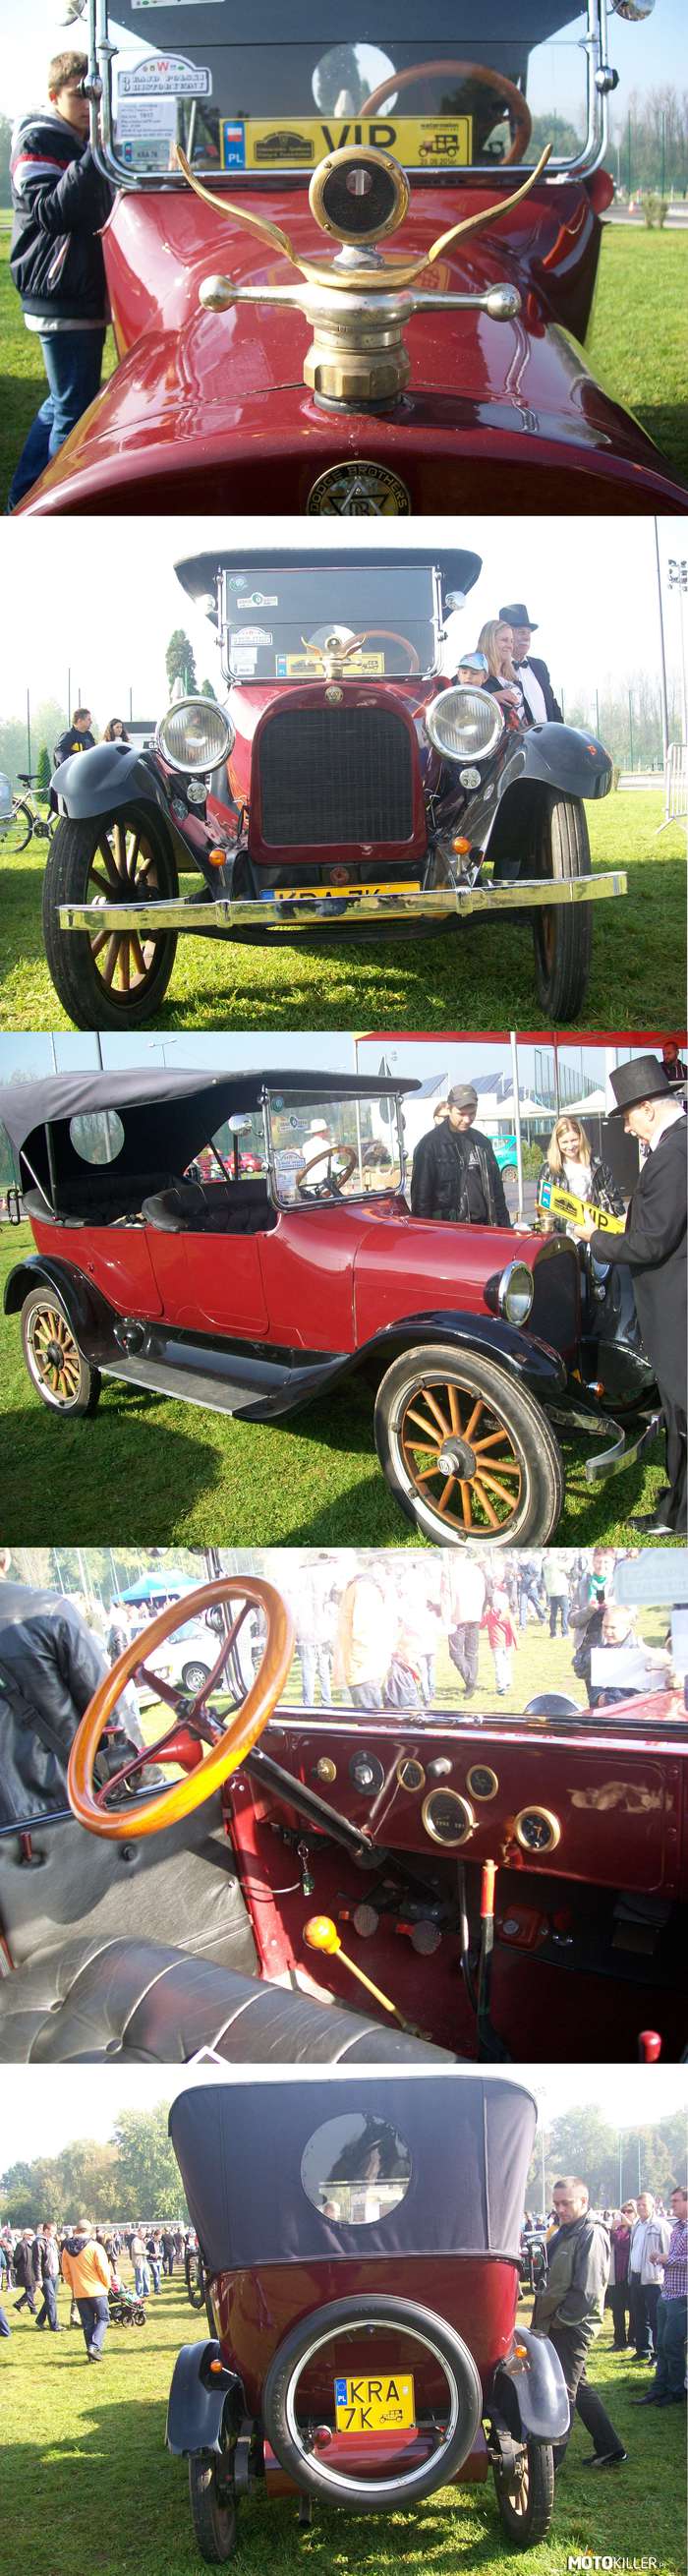 Dodge z początku wieku – Auto z ok 1906r. i sympatyczny właściciel ubrany odpowiednio do auta z epoki. Pierwotnie odpalane na korbę, drewniane koła i kanapy zamiast osobnych siedzeń, a do tego kabriolet 
Ech... kiedyś to robili auta. 